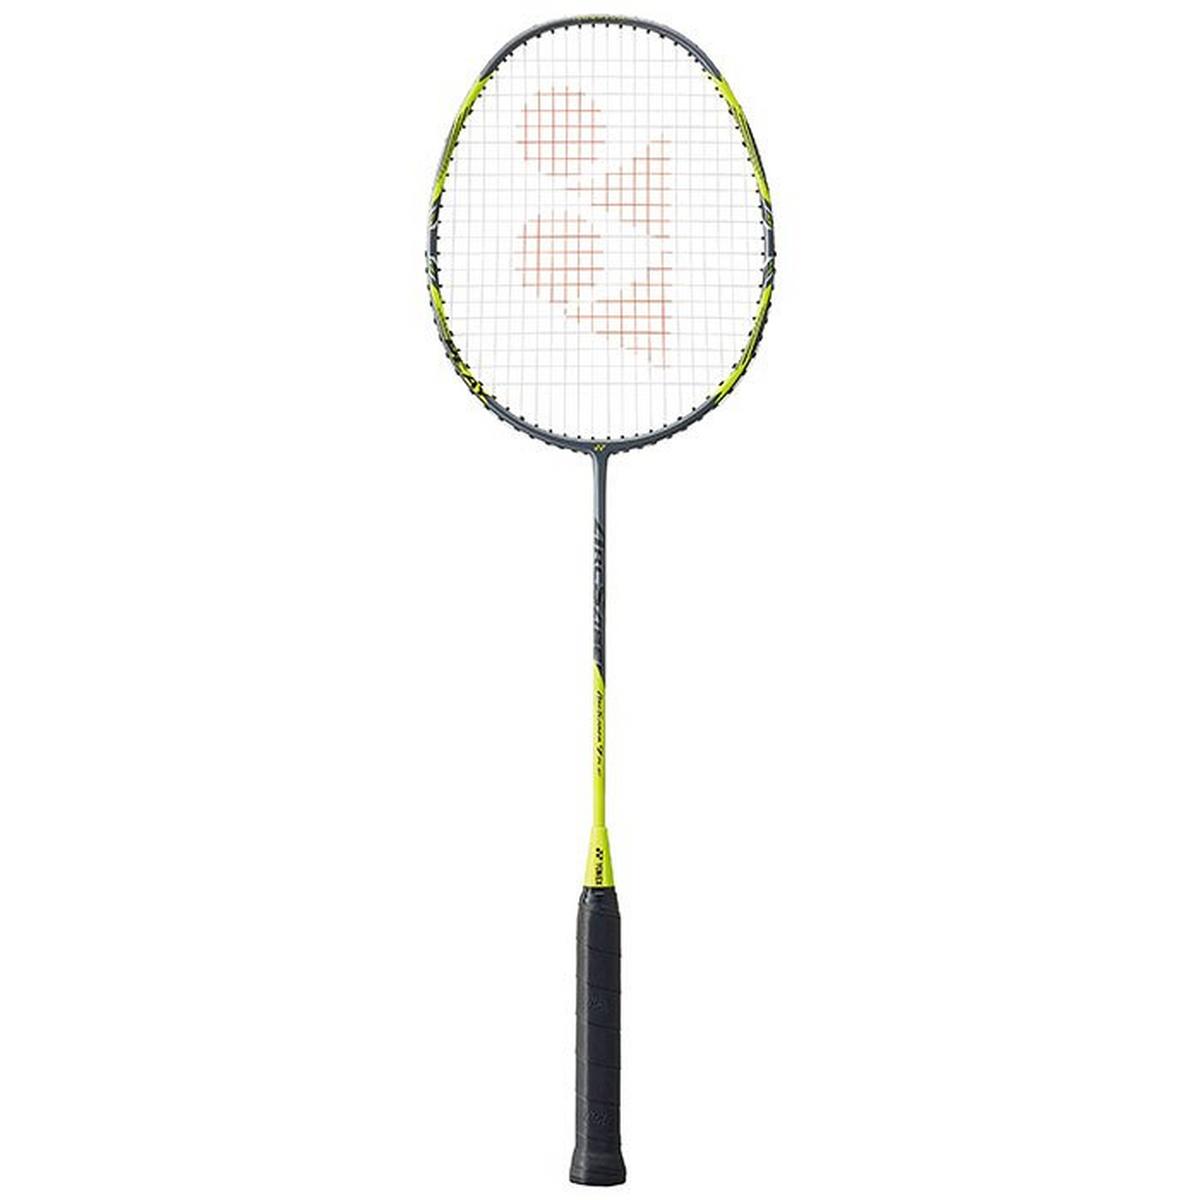 Raquette de badminton Arcsaber 7 Play avec housse gratuite